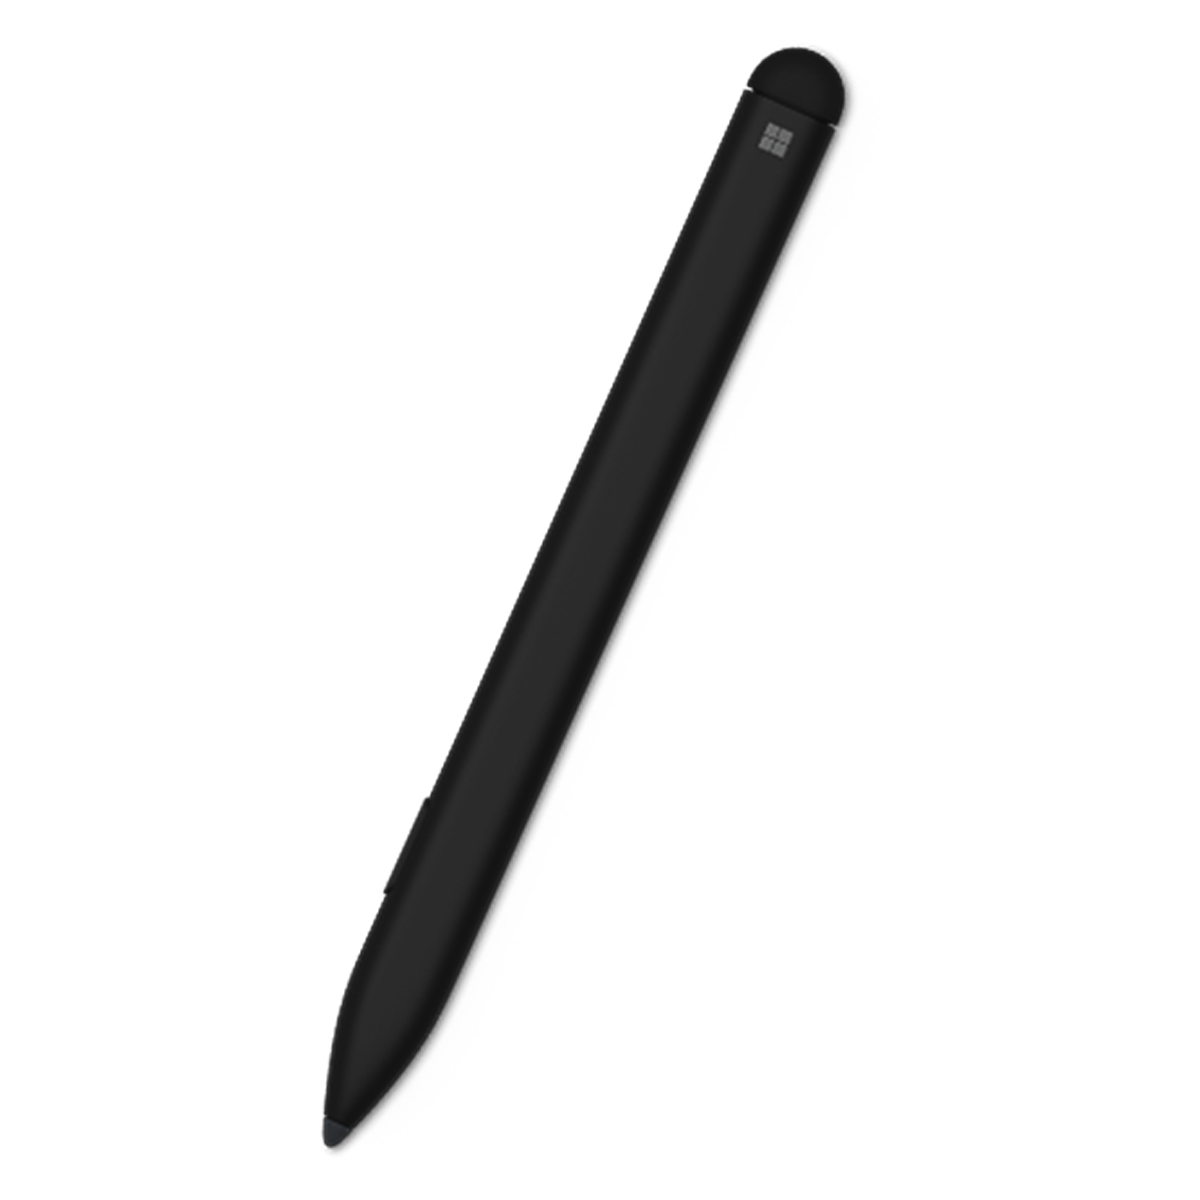 Microsoft's new Slim Pen